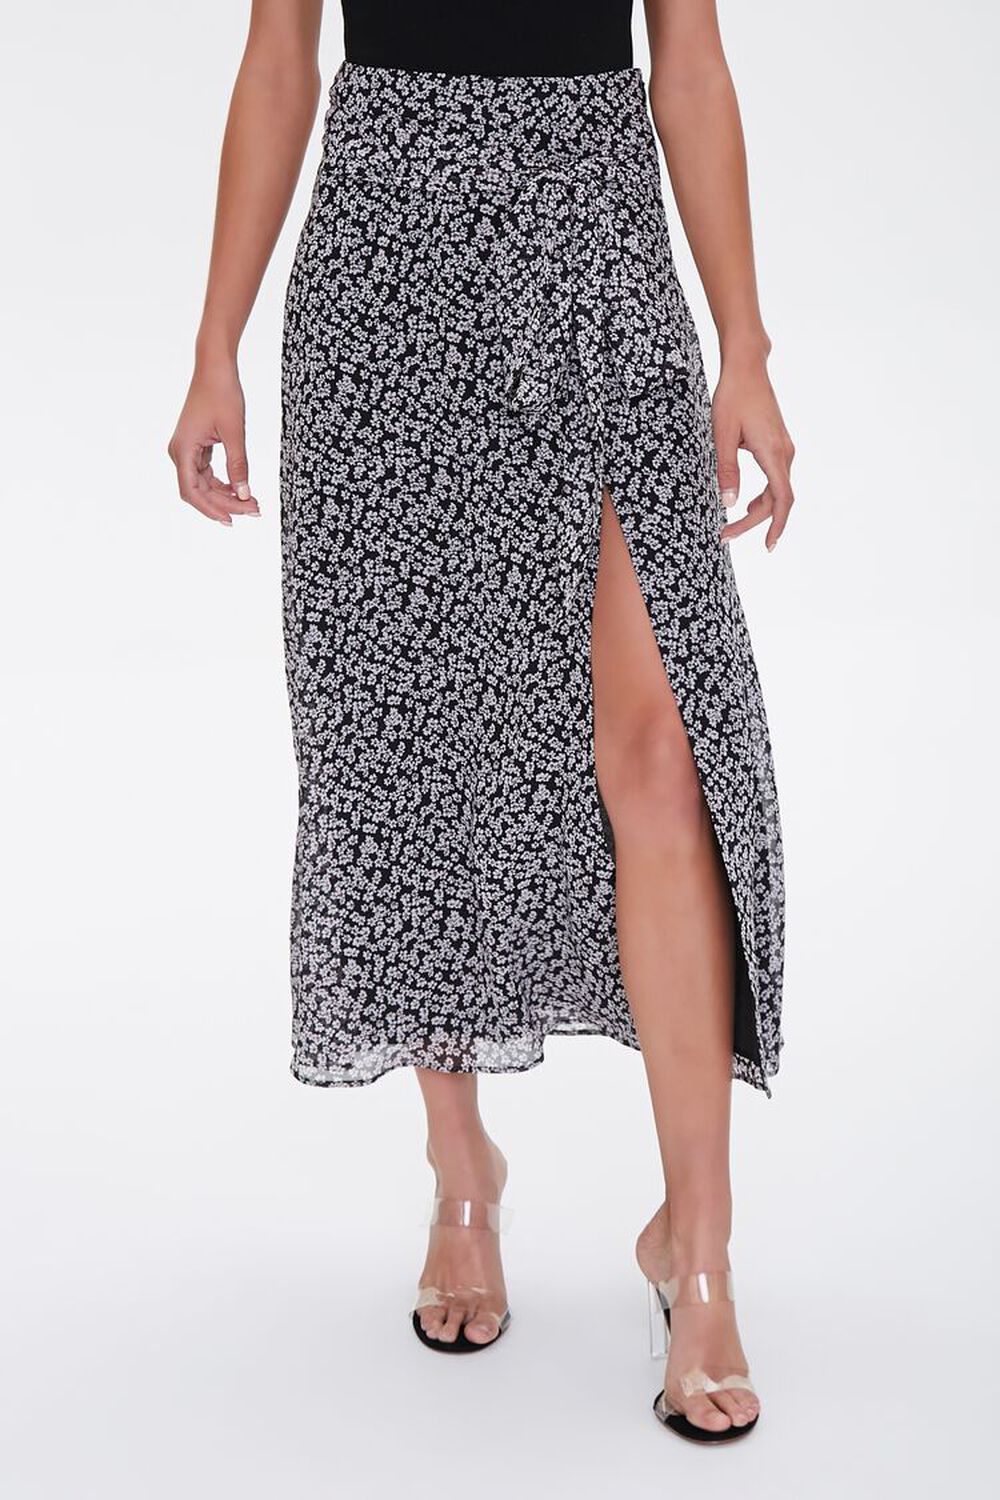 BLACK/MULTI Floral Tie-Waist Midi Skirt, image 1